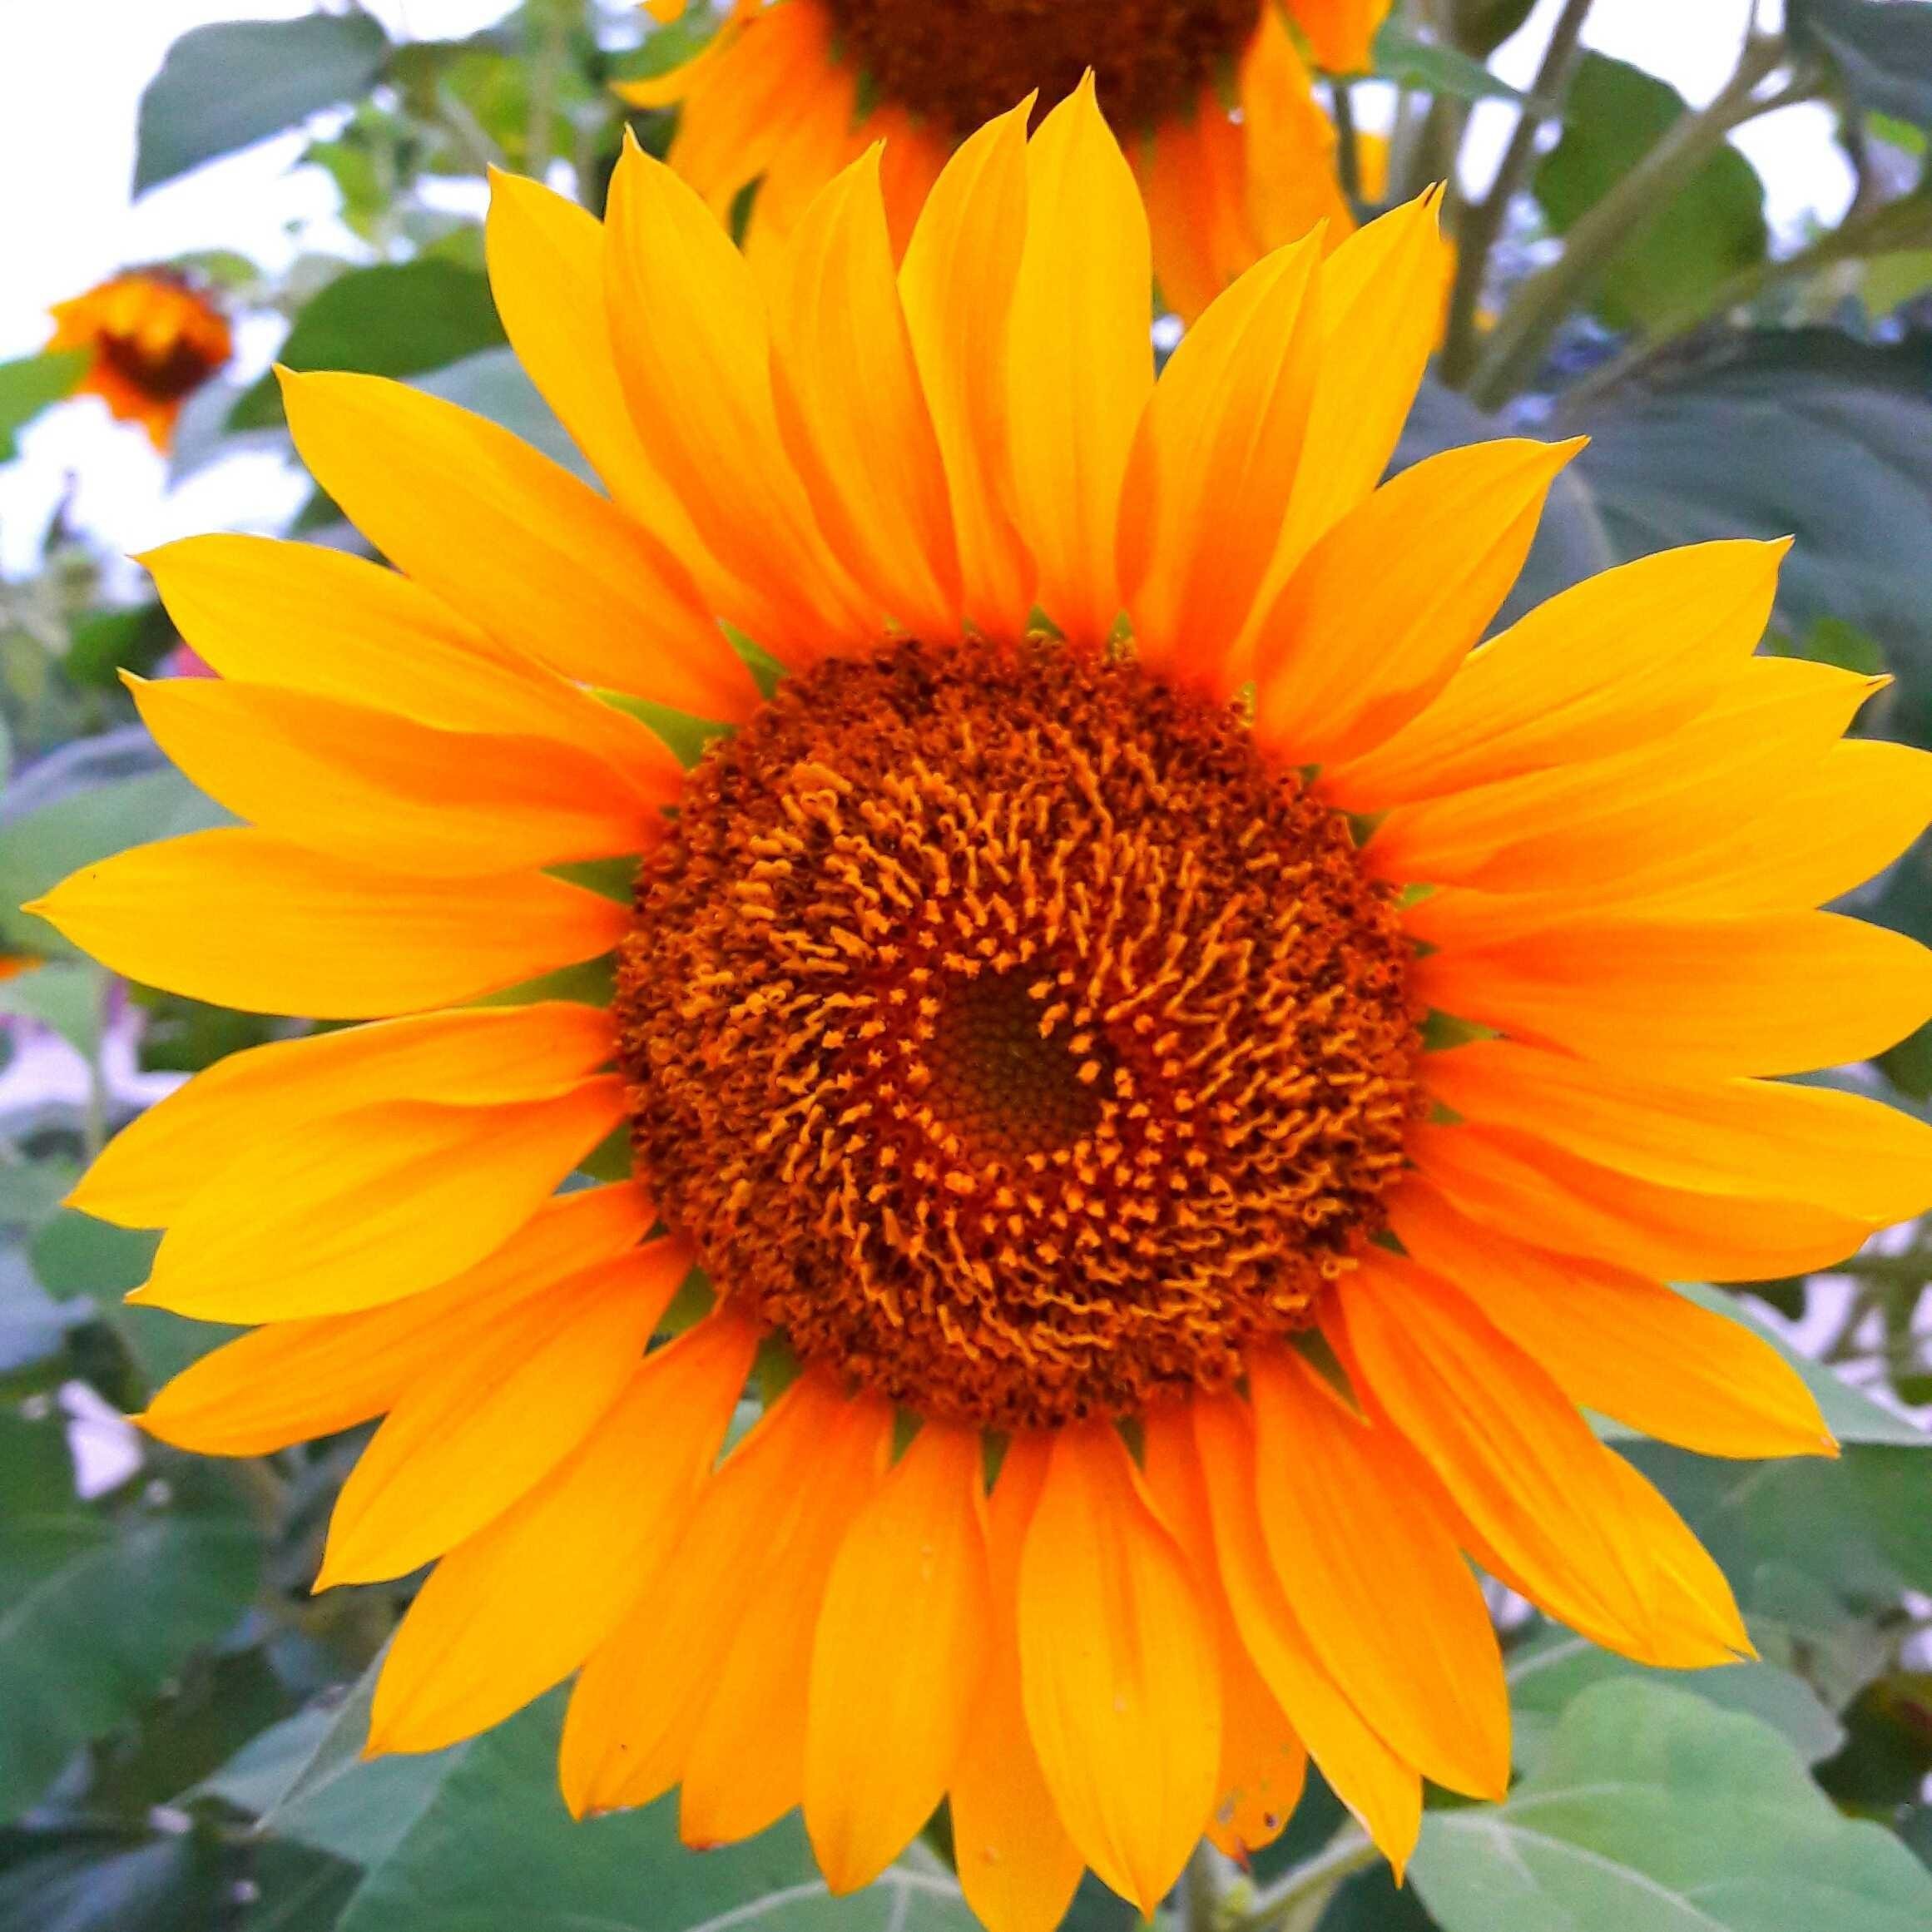  Paling  Populer 19 Gambar  Bunga Matahari Yang Mudah  